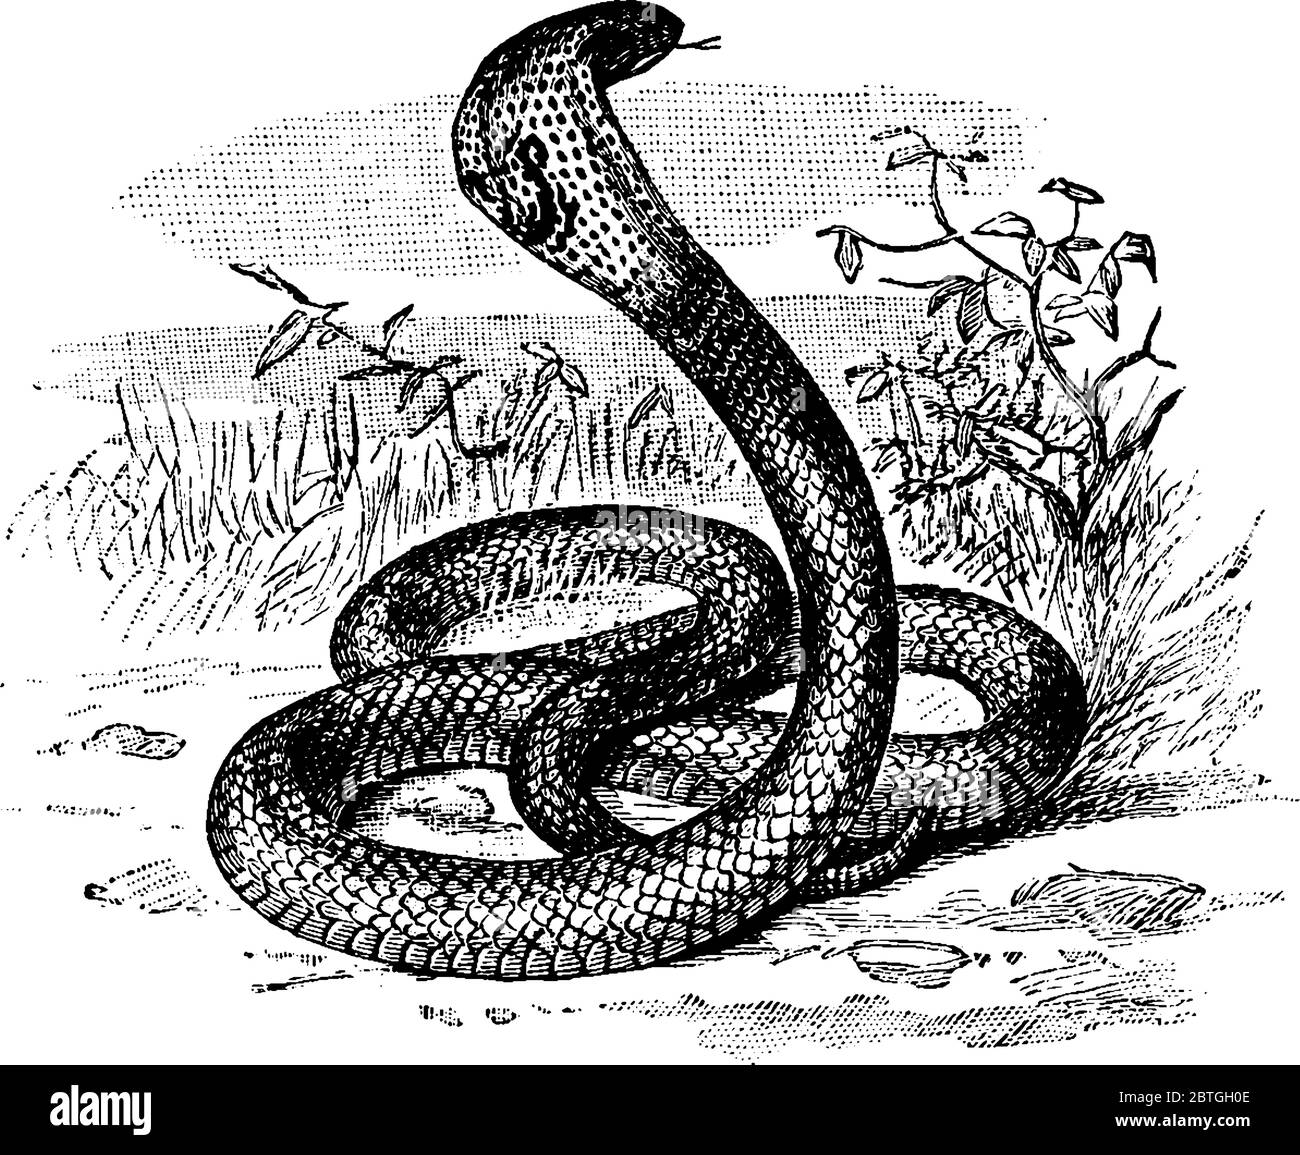 Los cobras son serpientes venenosas de la familia Elapidae, dibujo de líneas vintage o ilustración de grabado. Ilustración del Vector